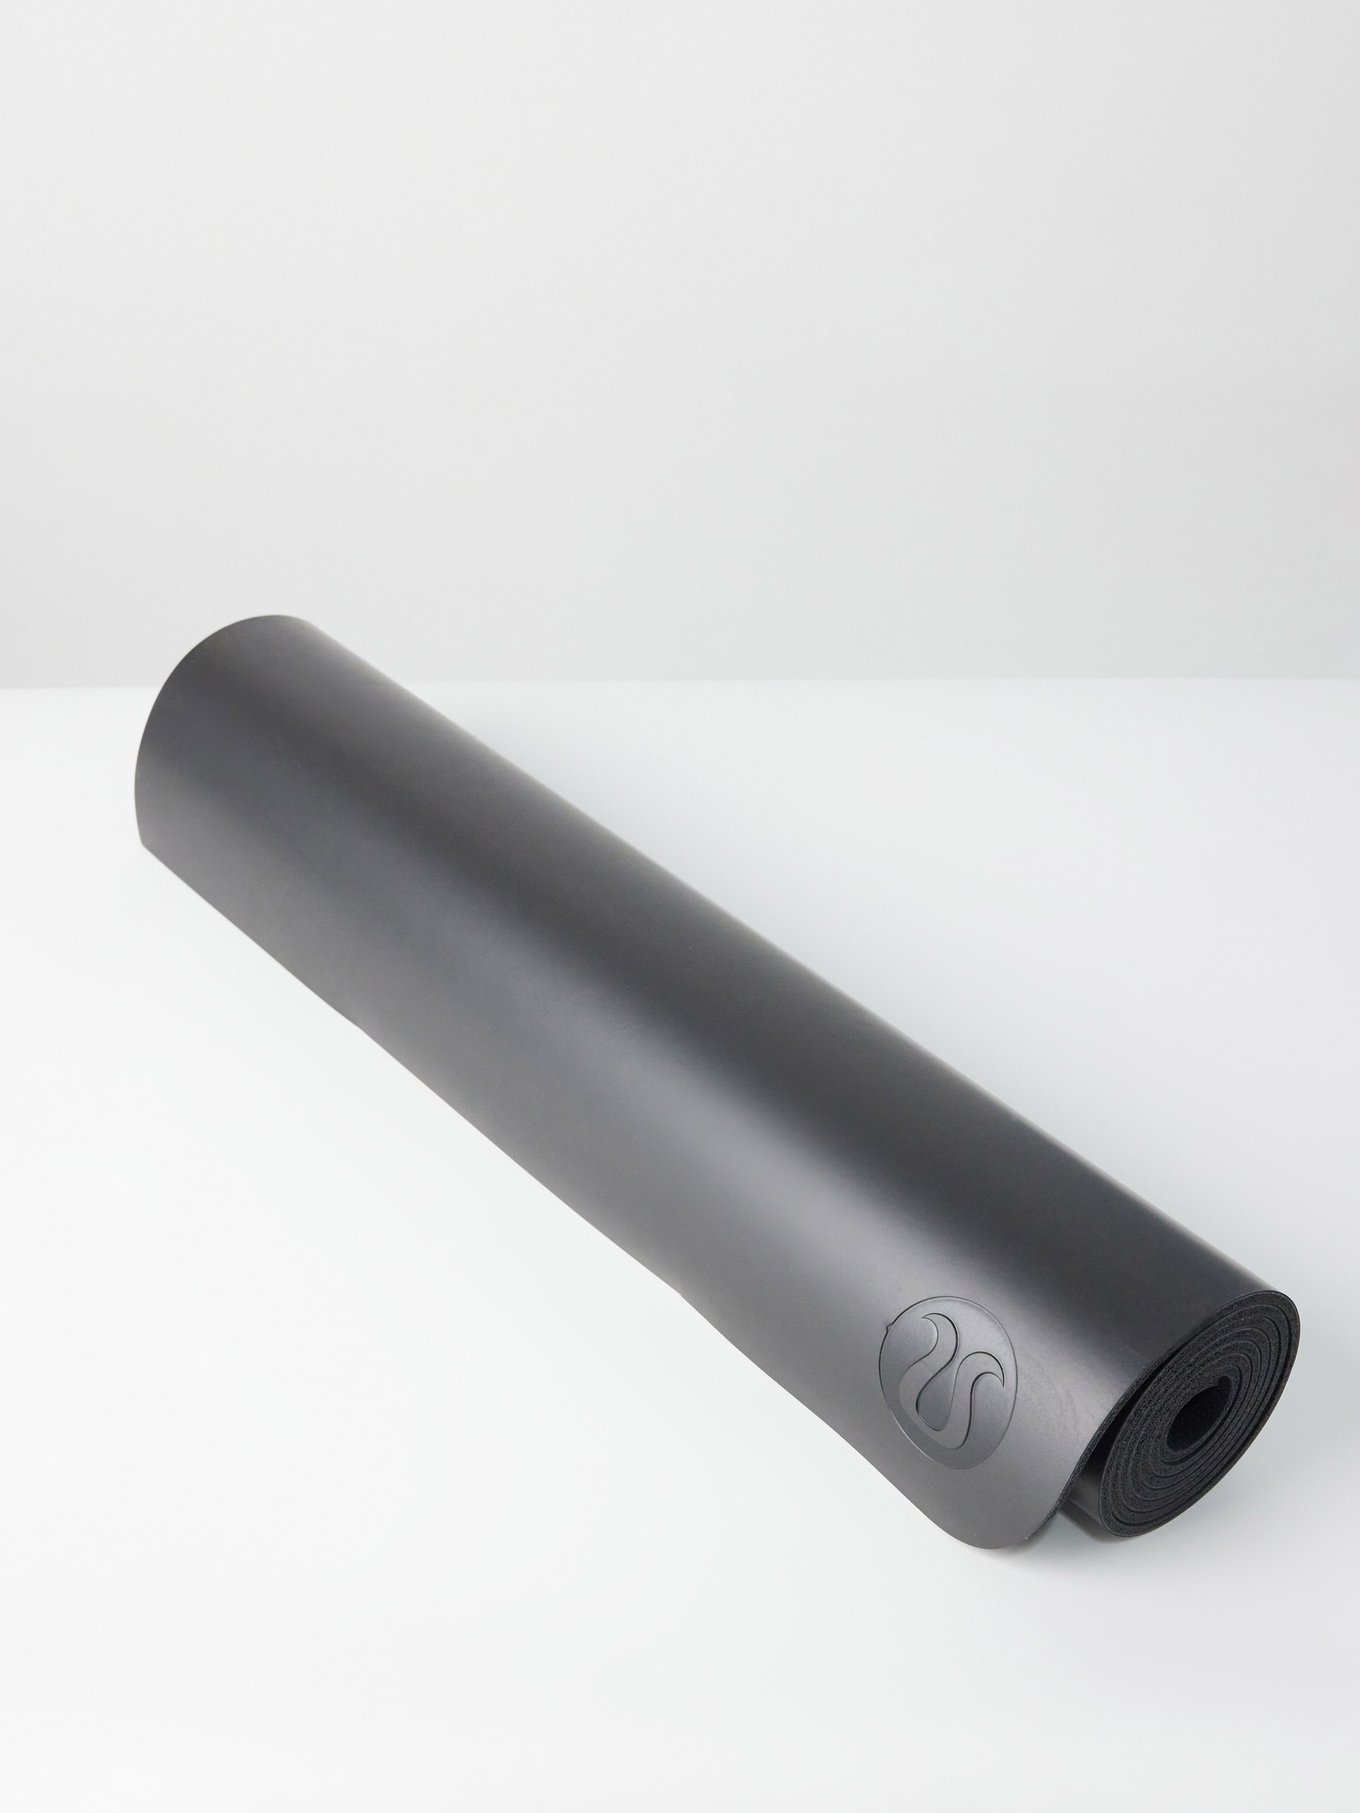 lululemon The Reversible Yoga Mat 5mm